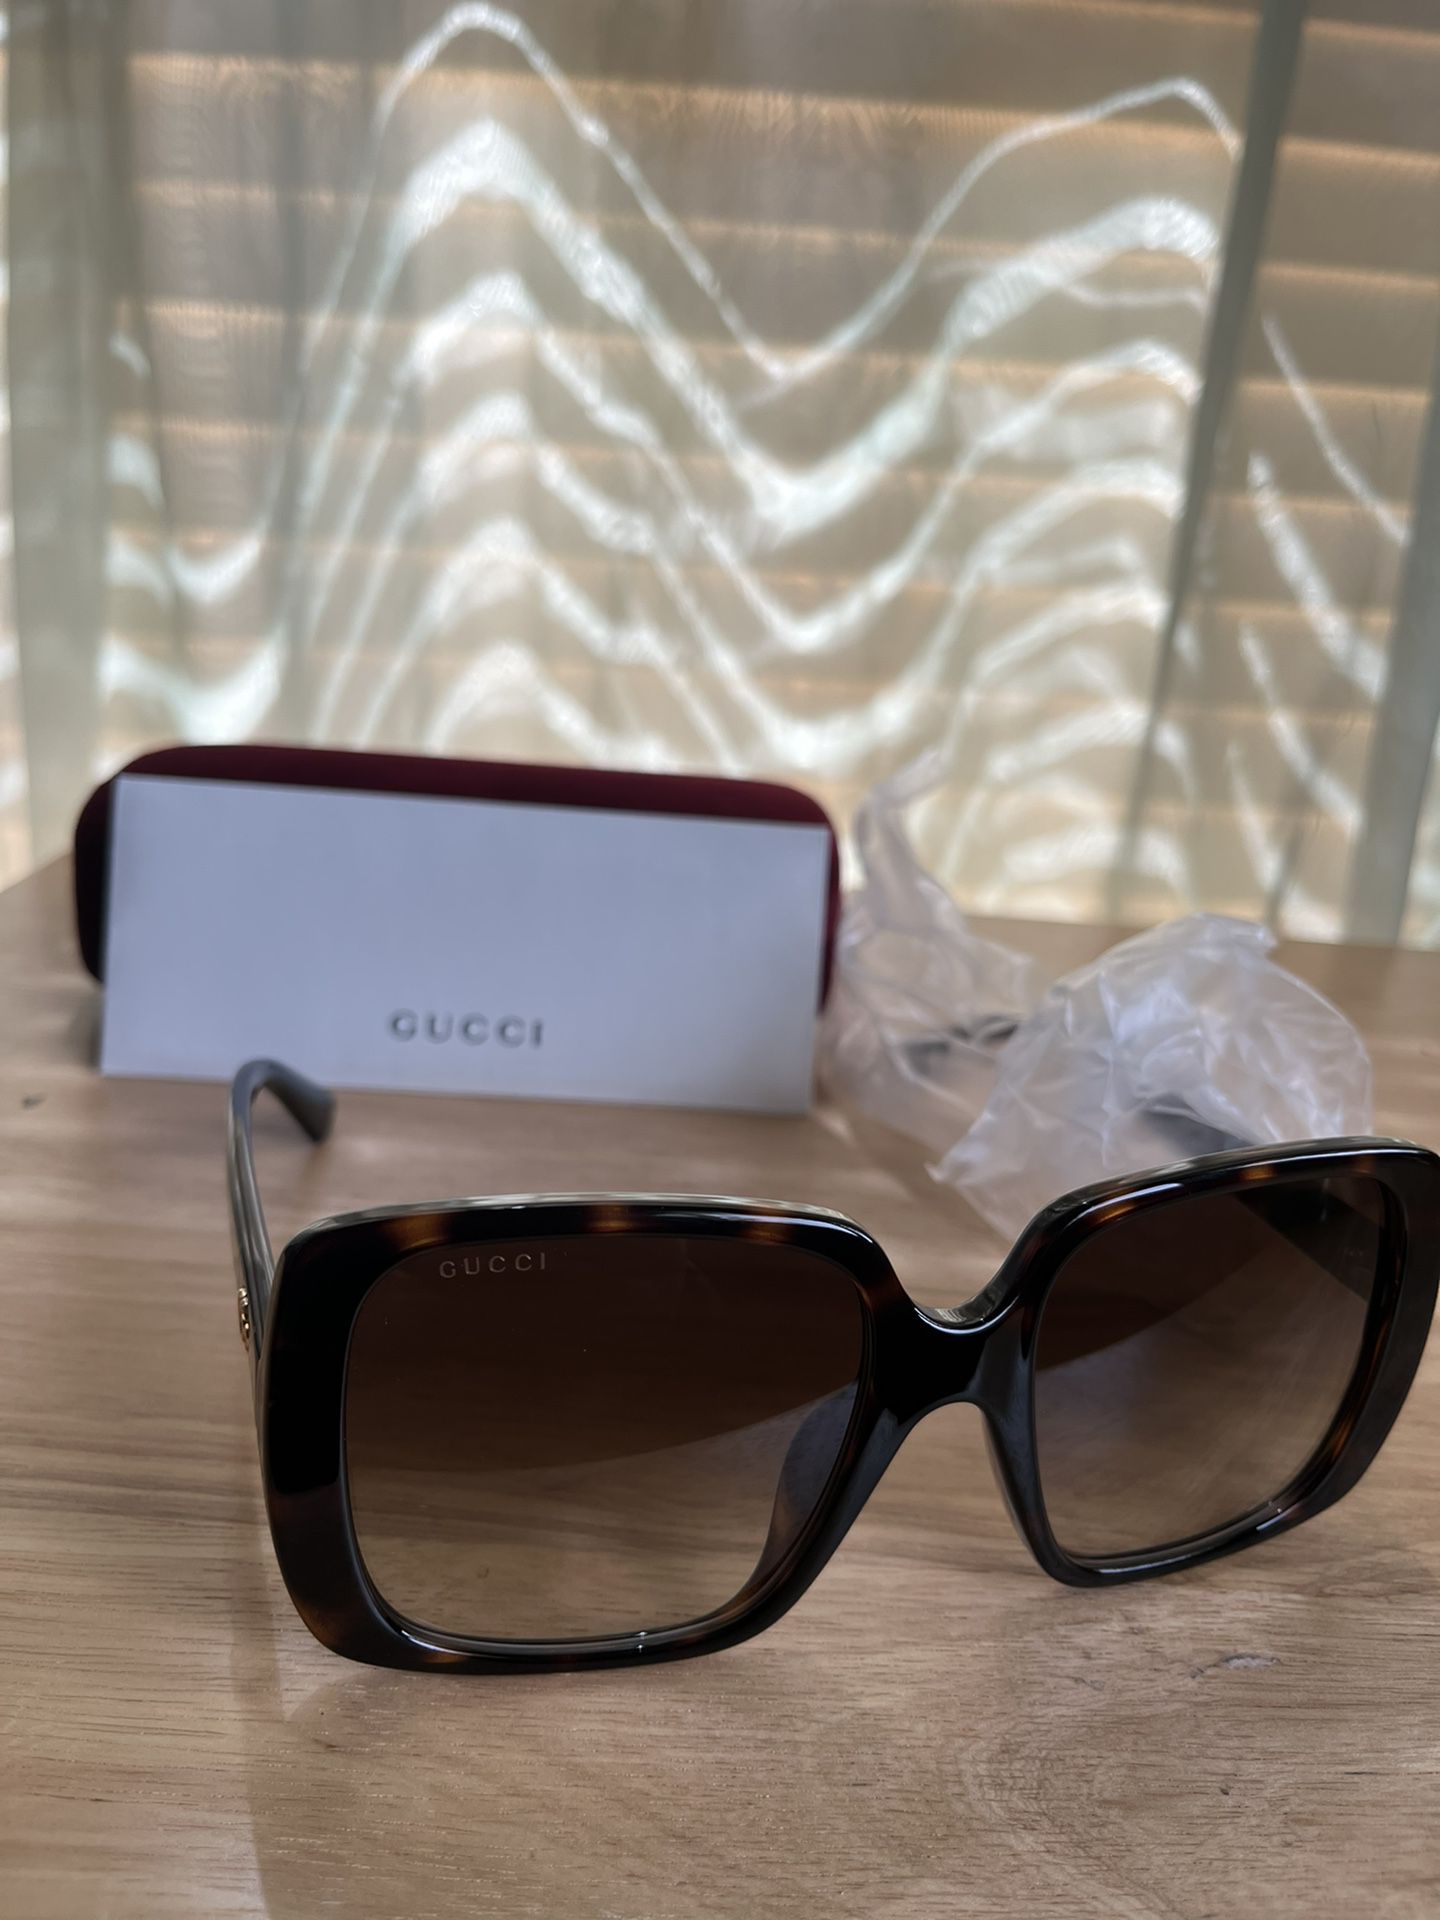 Gucci Sunglasses (New!) 